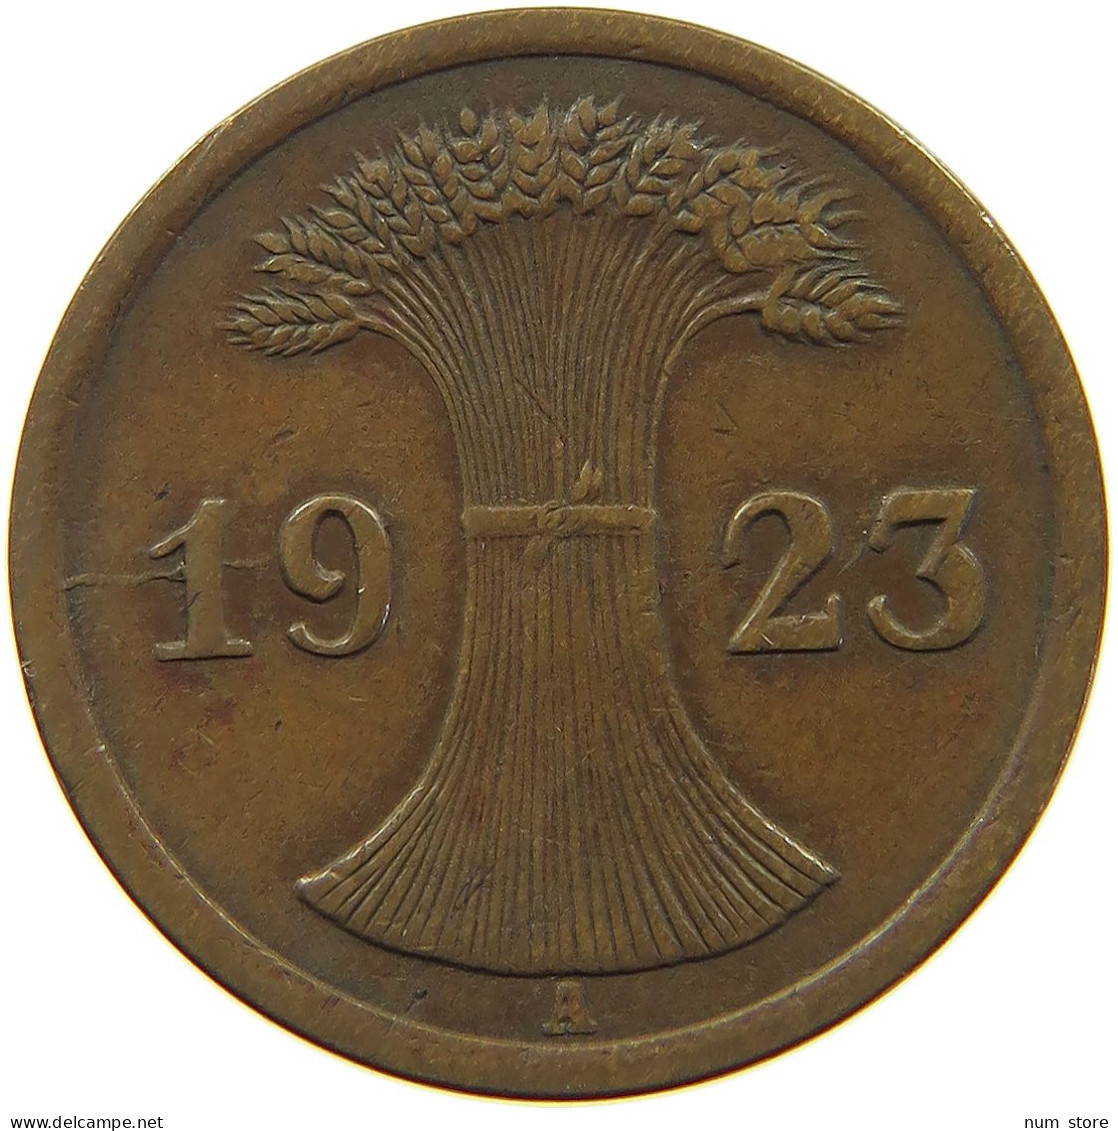 WEIMARER REPUBLIK 2 PFENNIG 1923 A DIE ERROR #a074 0657 - 2 Renten- & 2 Reichspfennig